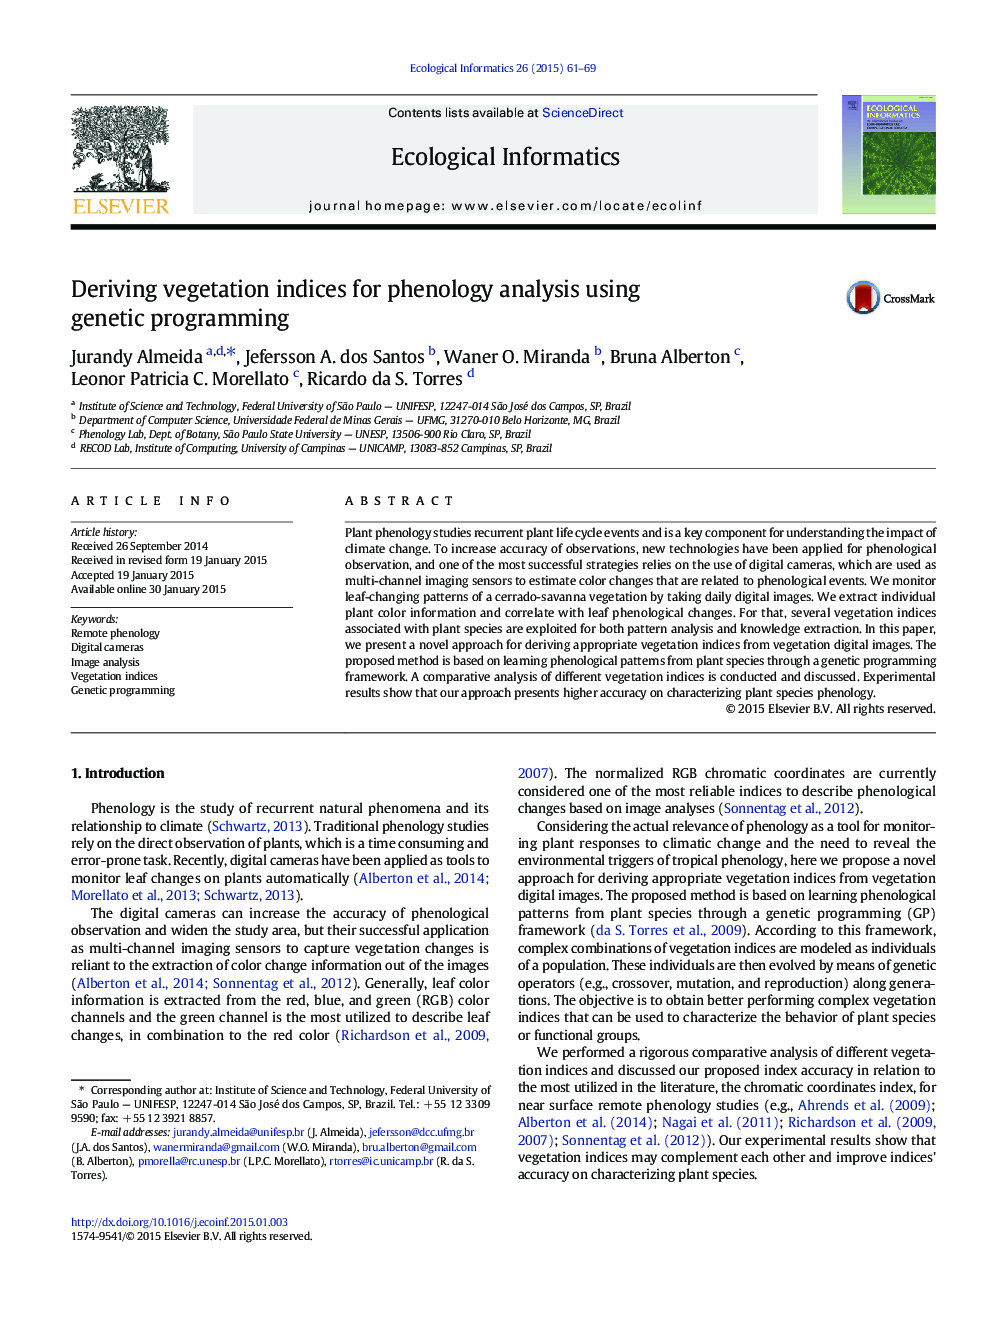 ارزیابی شاخص های پوشش گیاهی برای تجزیه و تحلیل فنولوژی با استفاده از برنامه نویسی ژنتیکی 